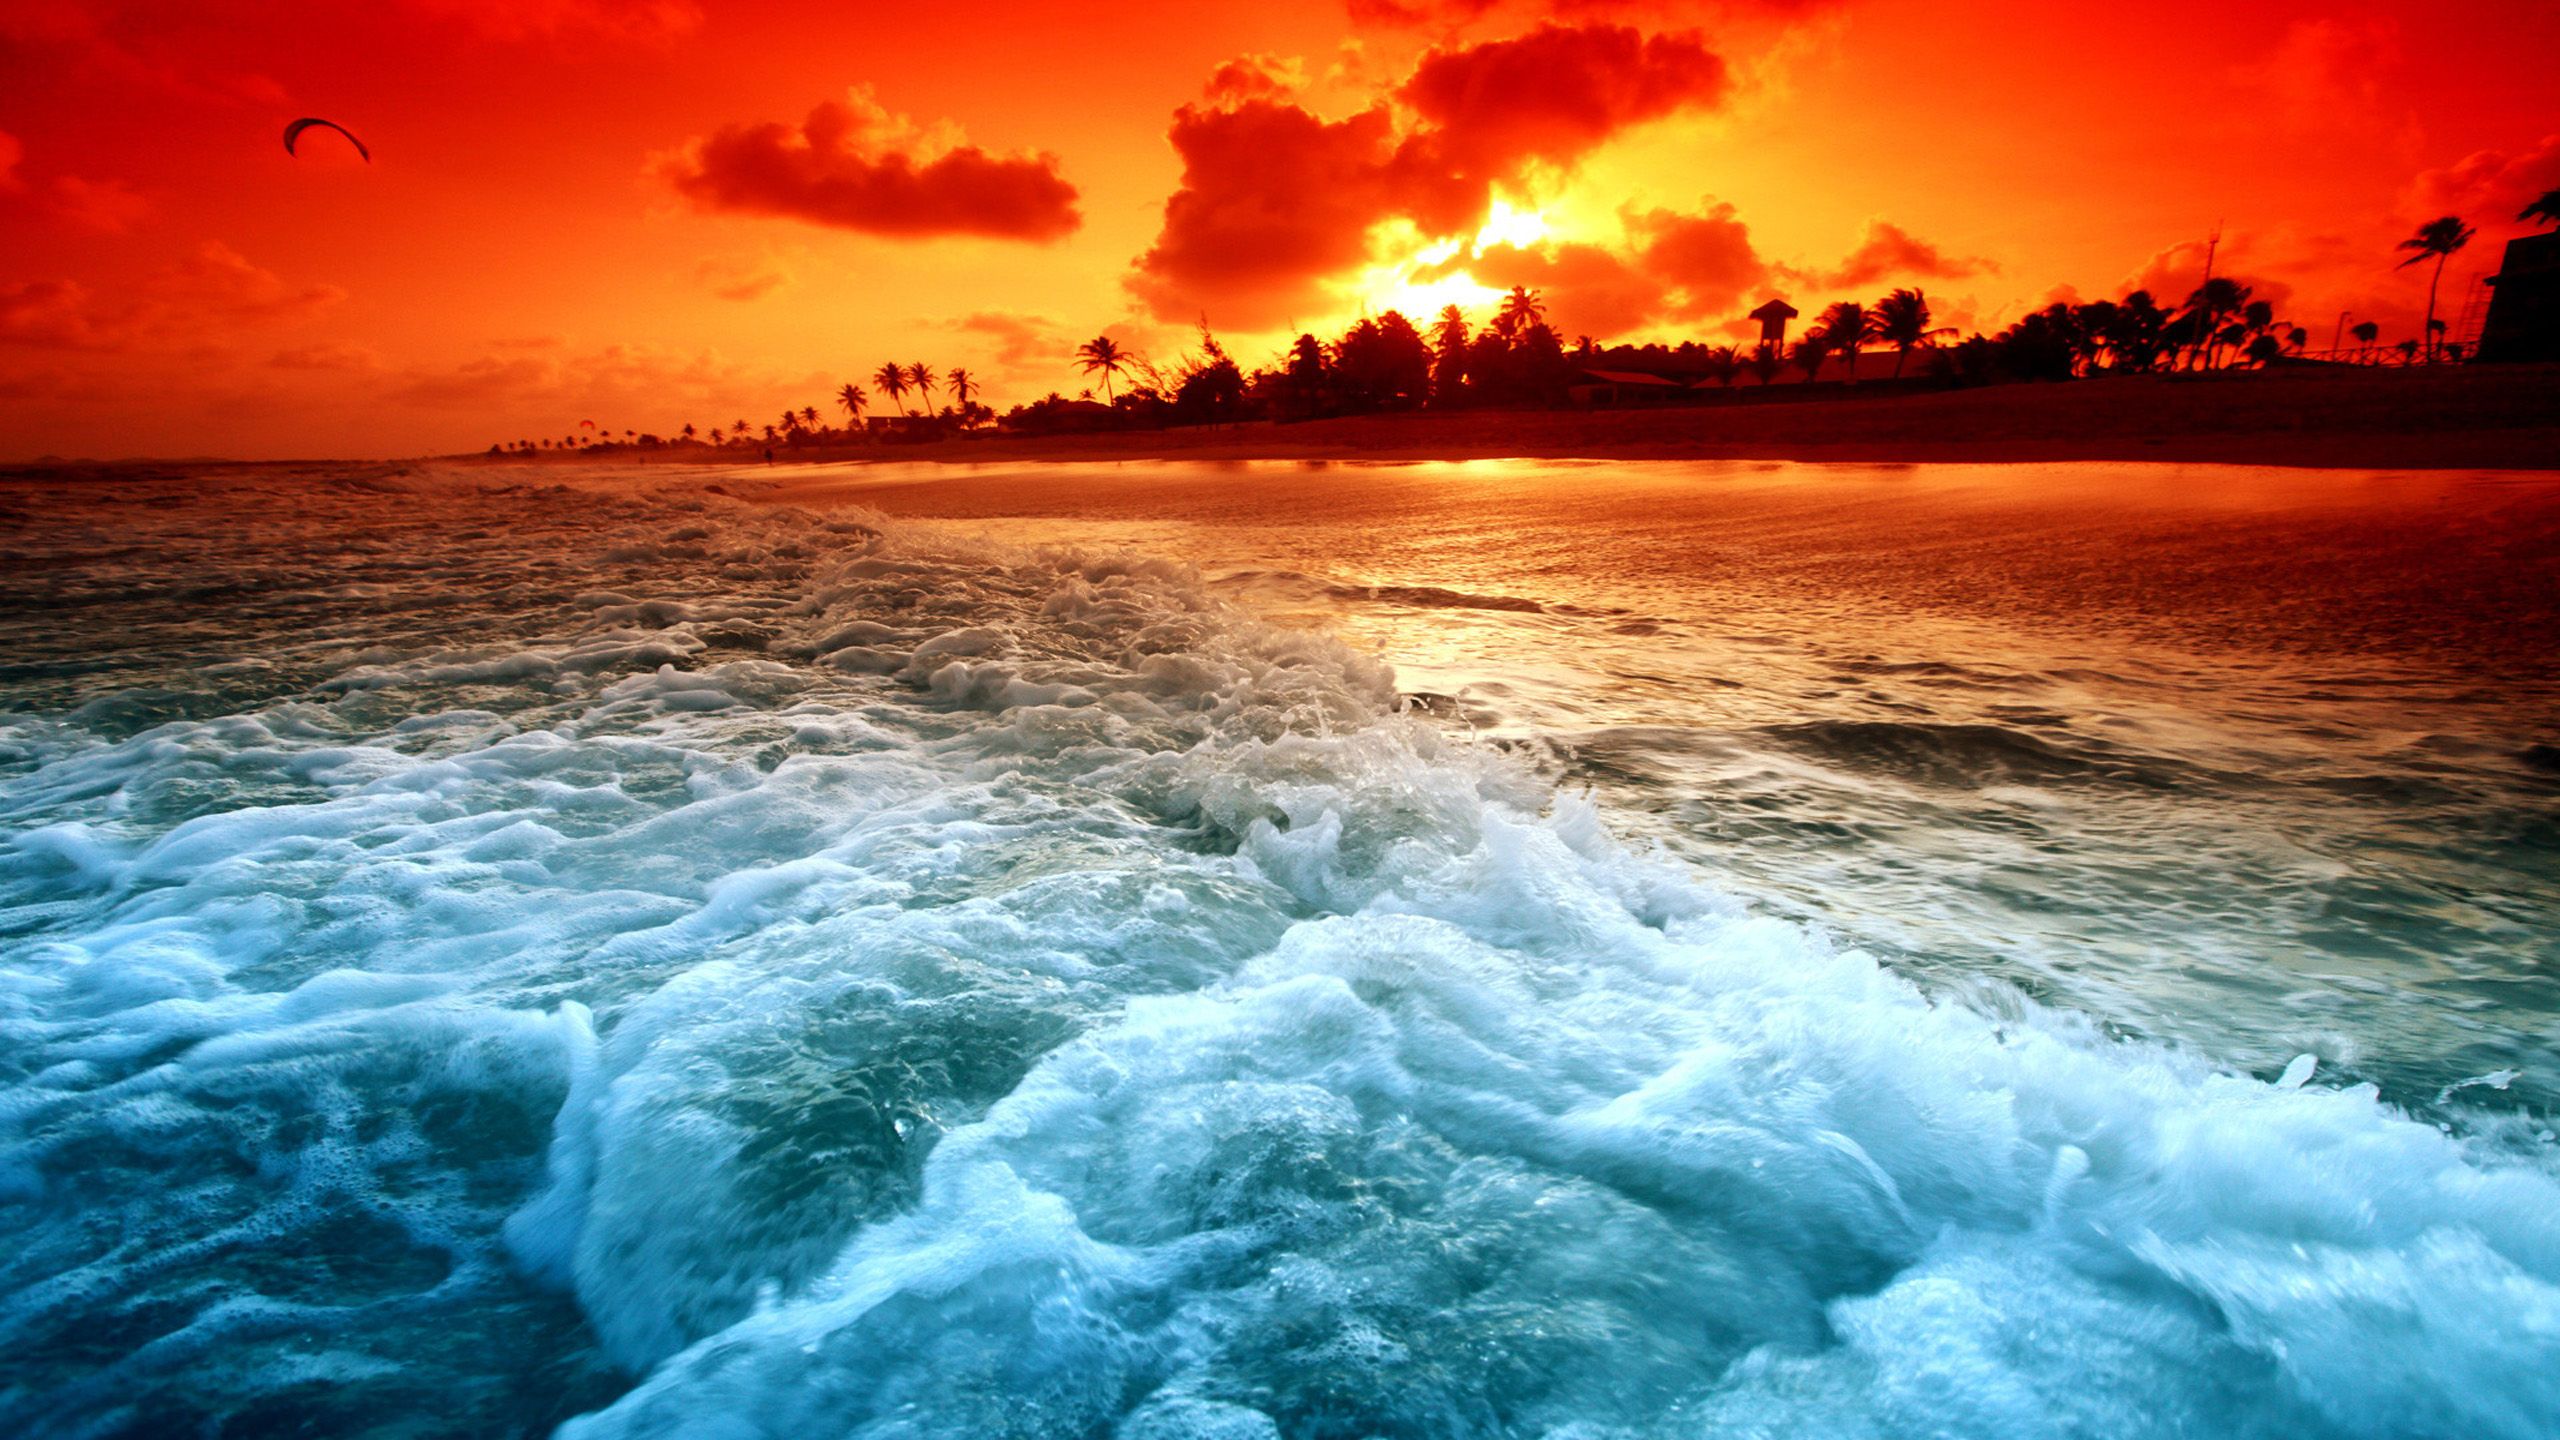 Beautiful Beach Sunset Fondos de pantalla | 2560x1440 | ID: 21921